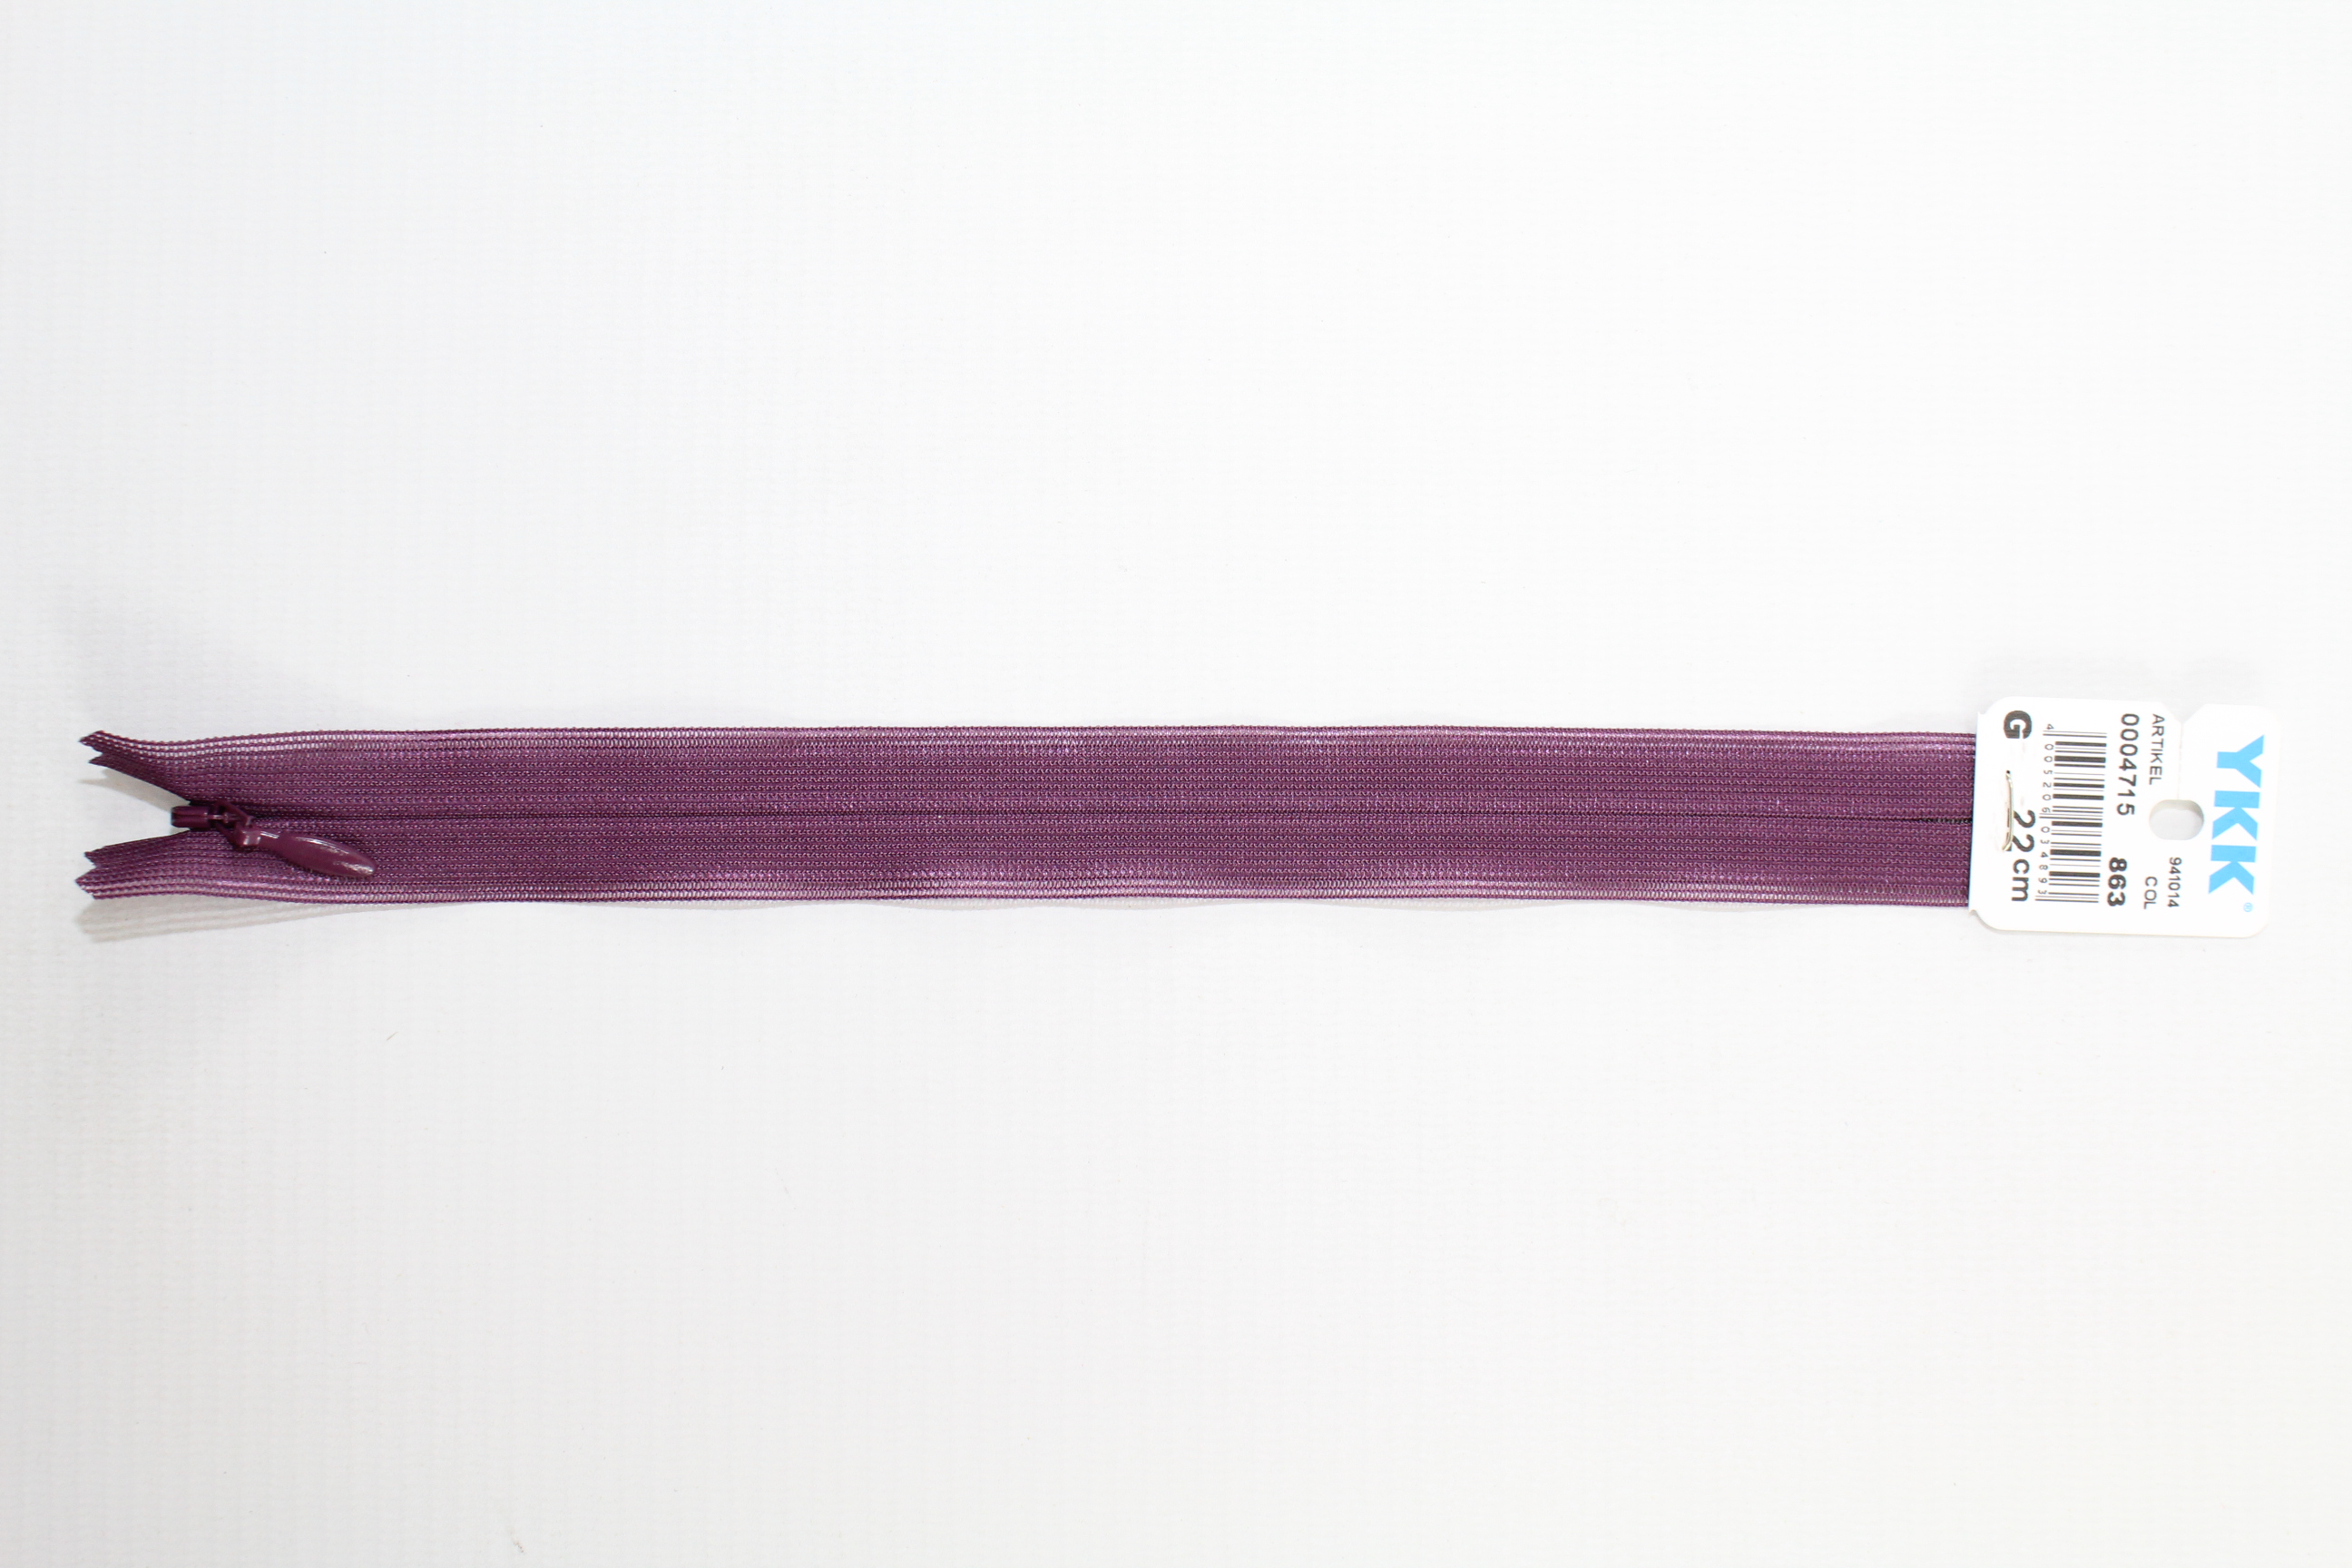 Nahtverdeckter Reissverschluss aus Kunststoff 22cm (aubergine) Col. 863